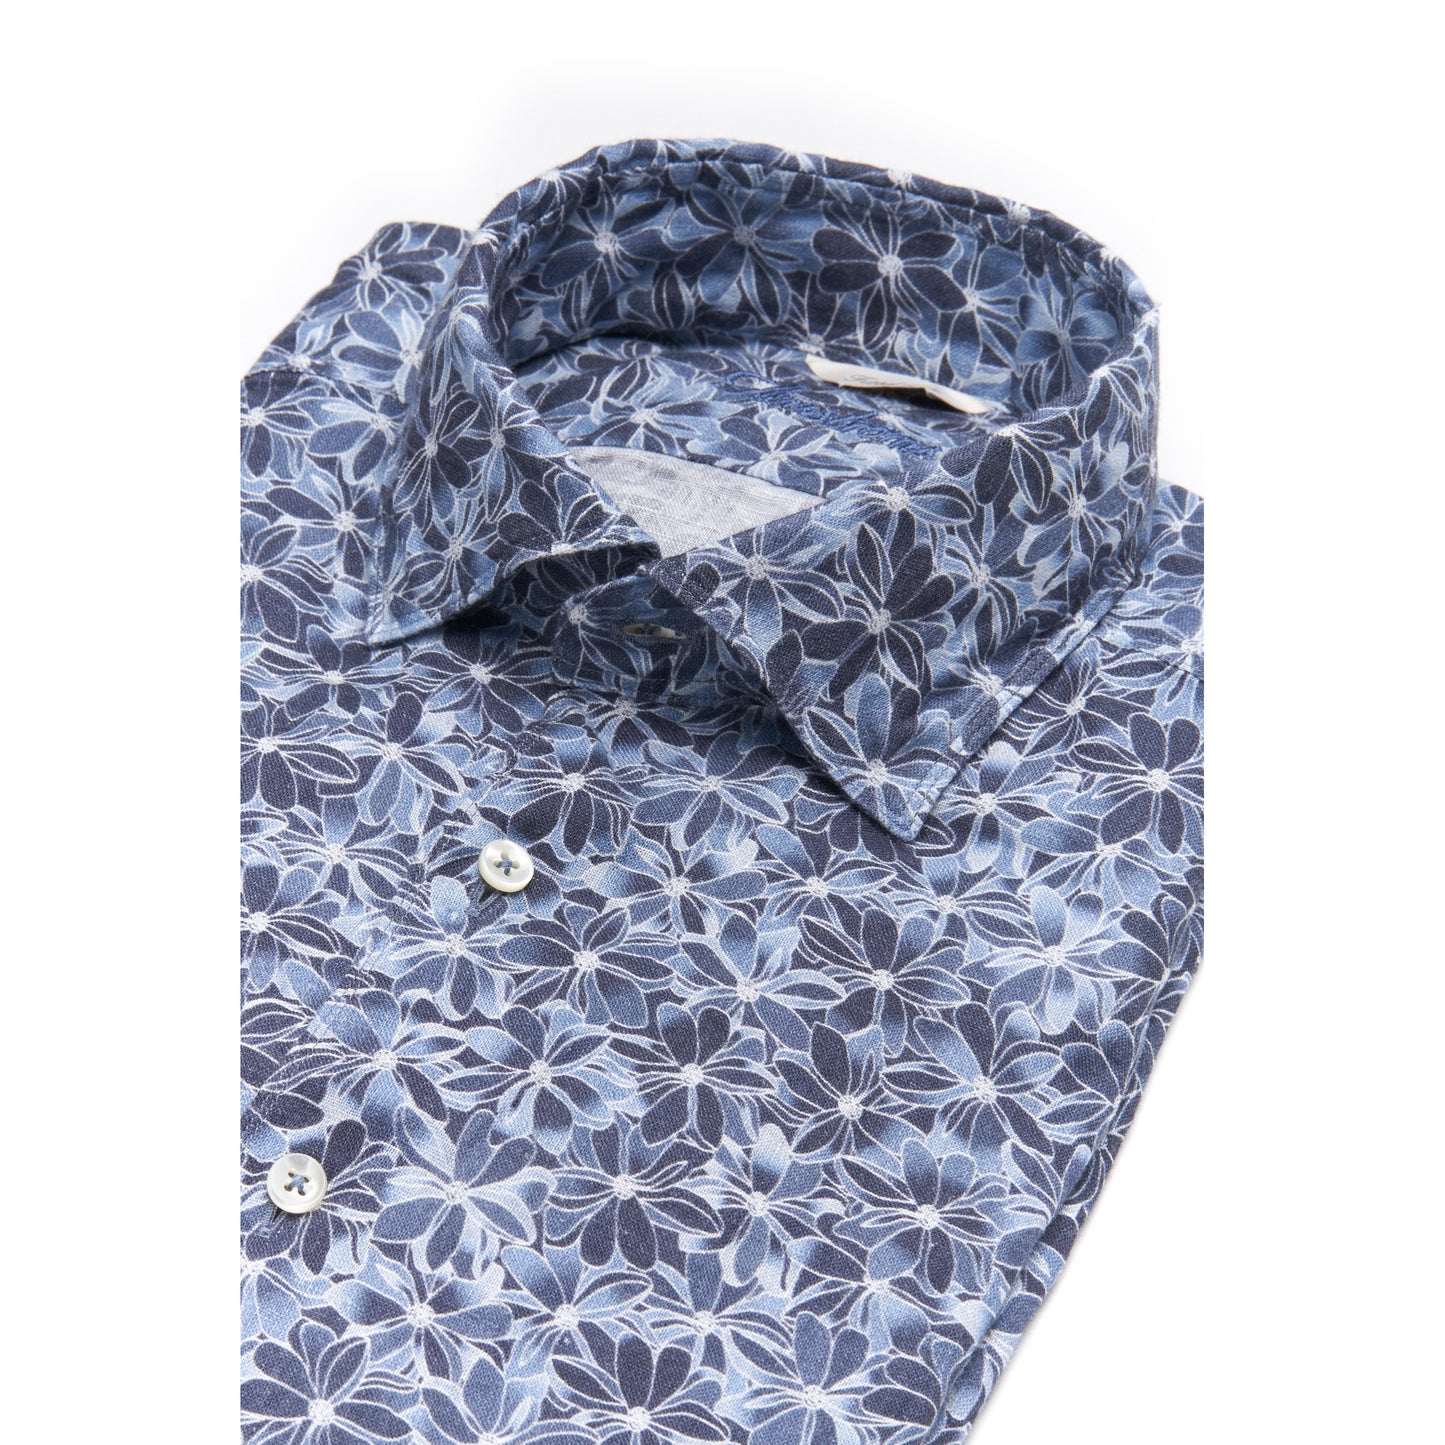 Stenstroms Blue Floral Linen Shirt